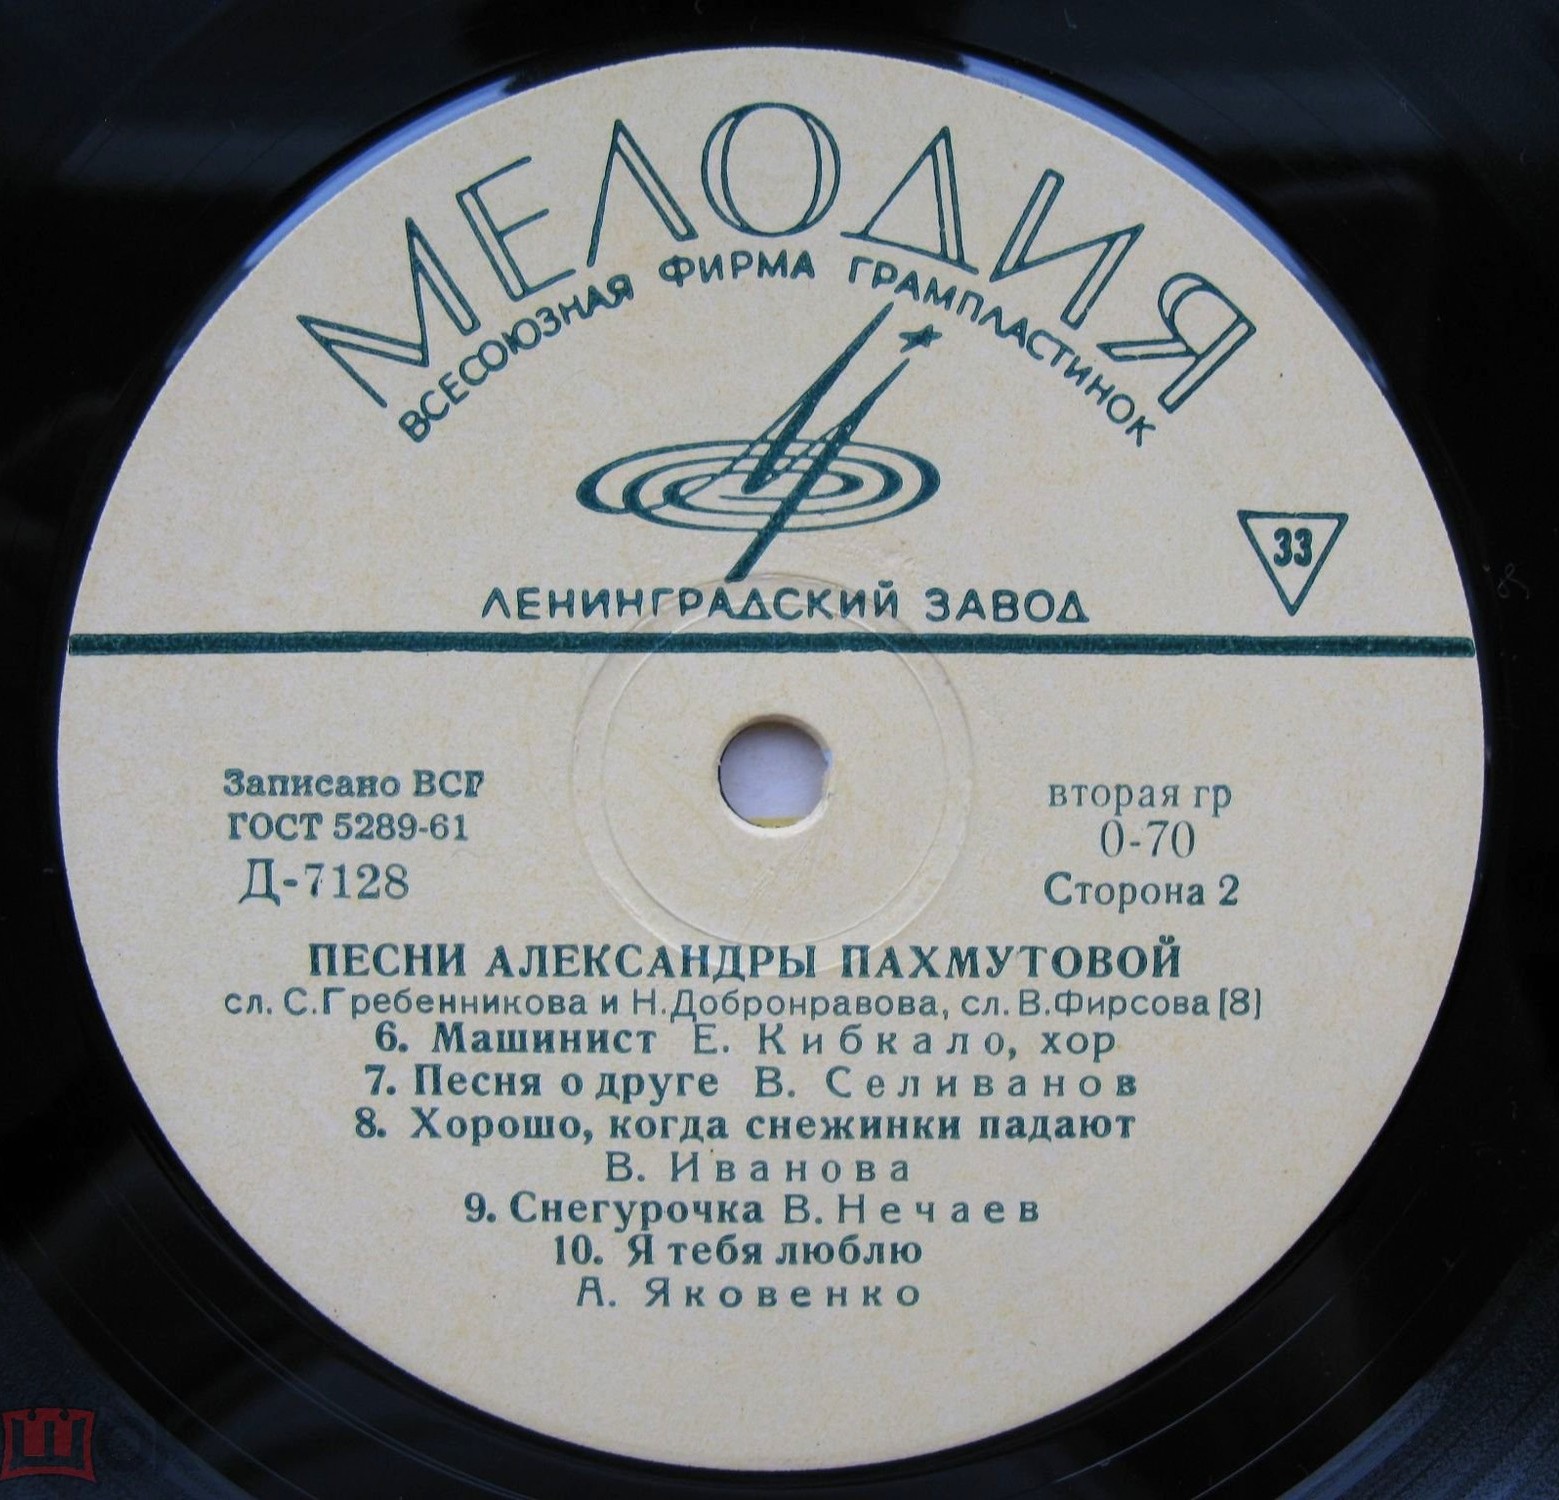 Песни Александры ПАХМУТОВОЙ (1929)